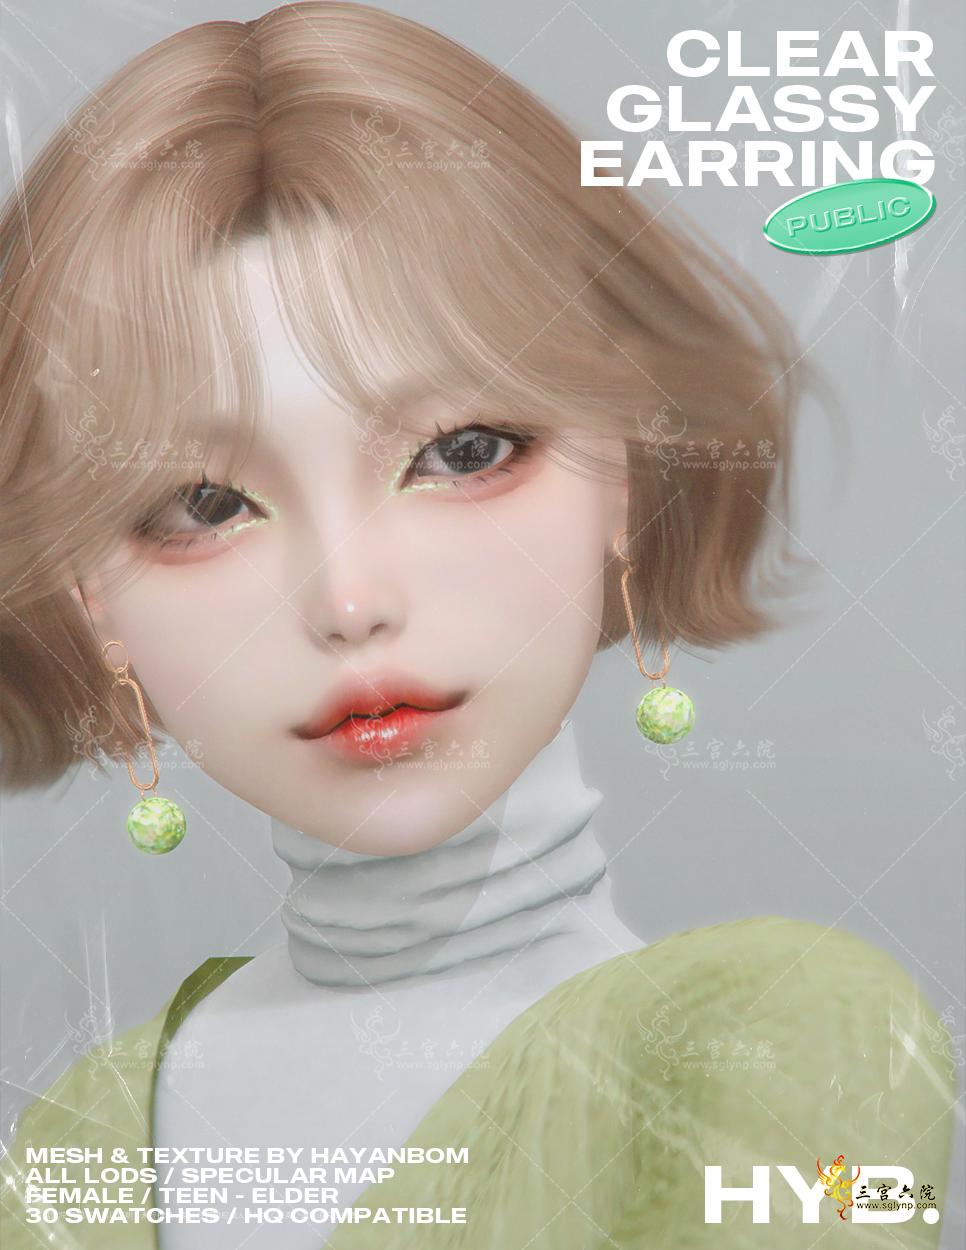 hyb_glitter glassy earring3.png